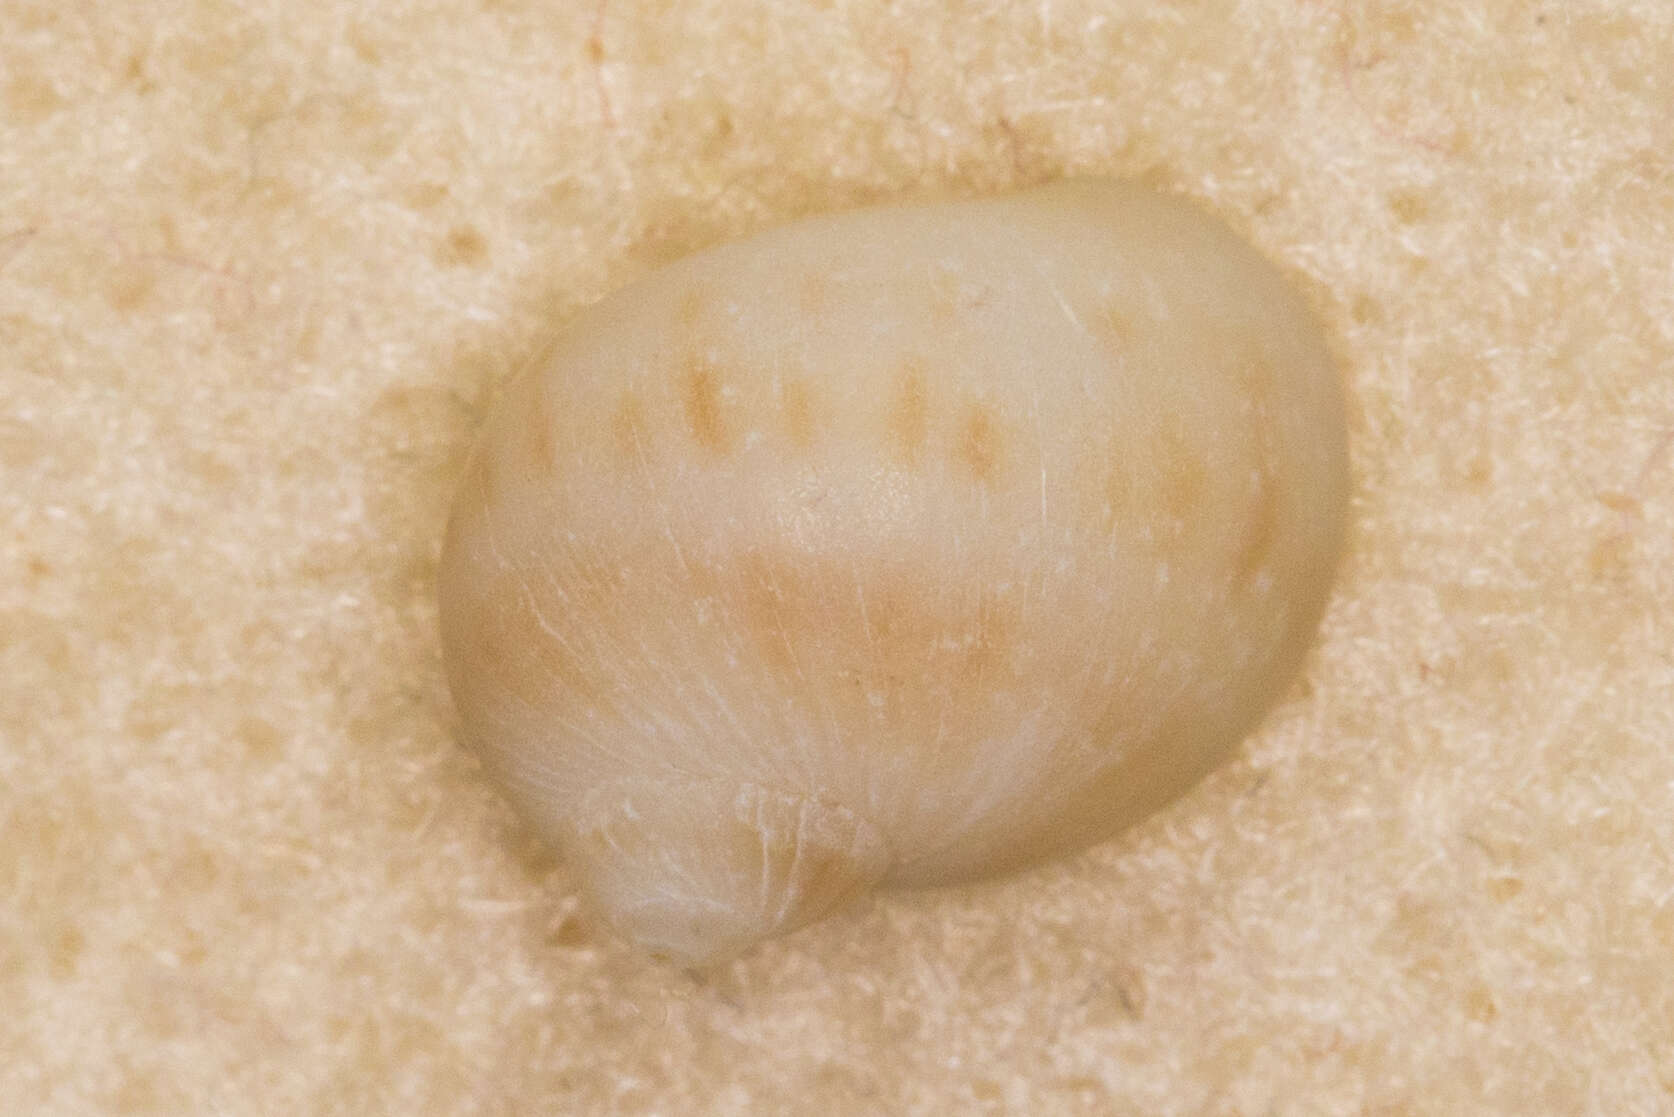 Image of Notocochlis gualteriana